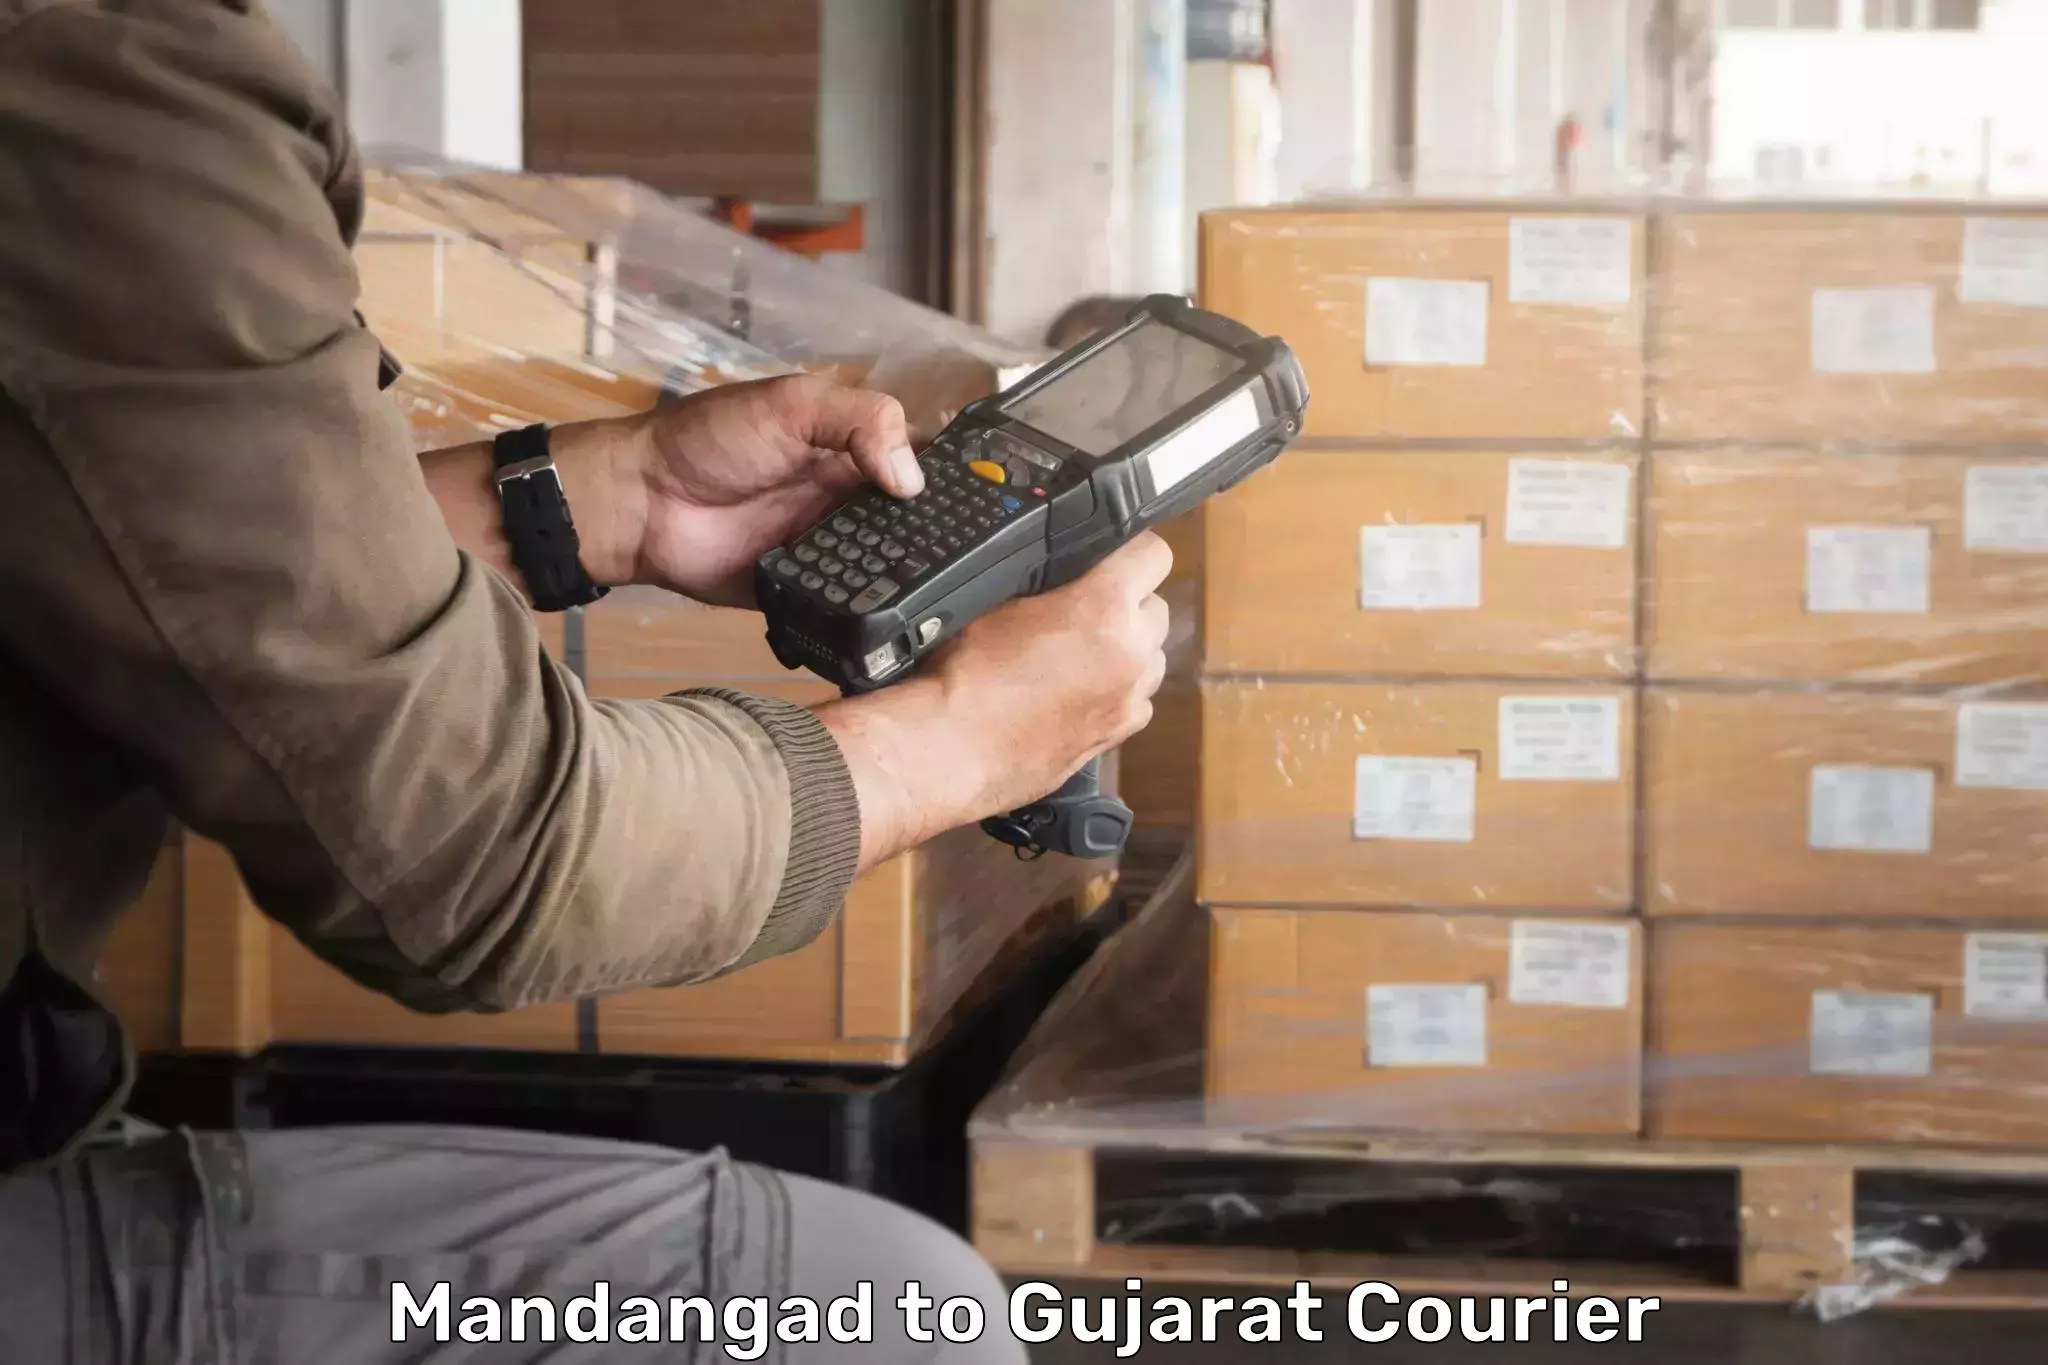 Flexible delivery scheduling Mandangad to IIT Gandhi Nagar